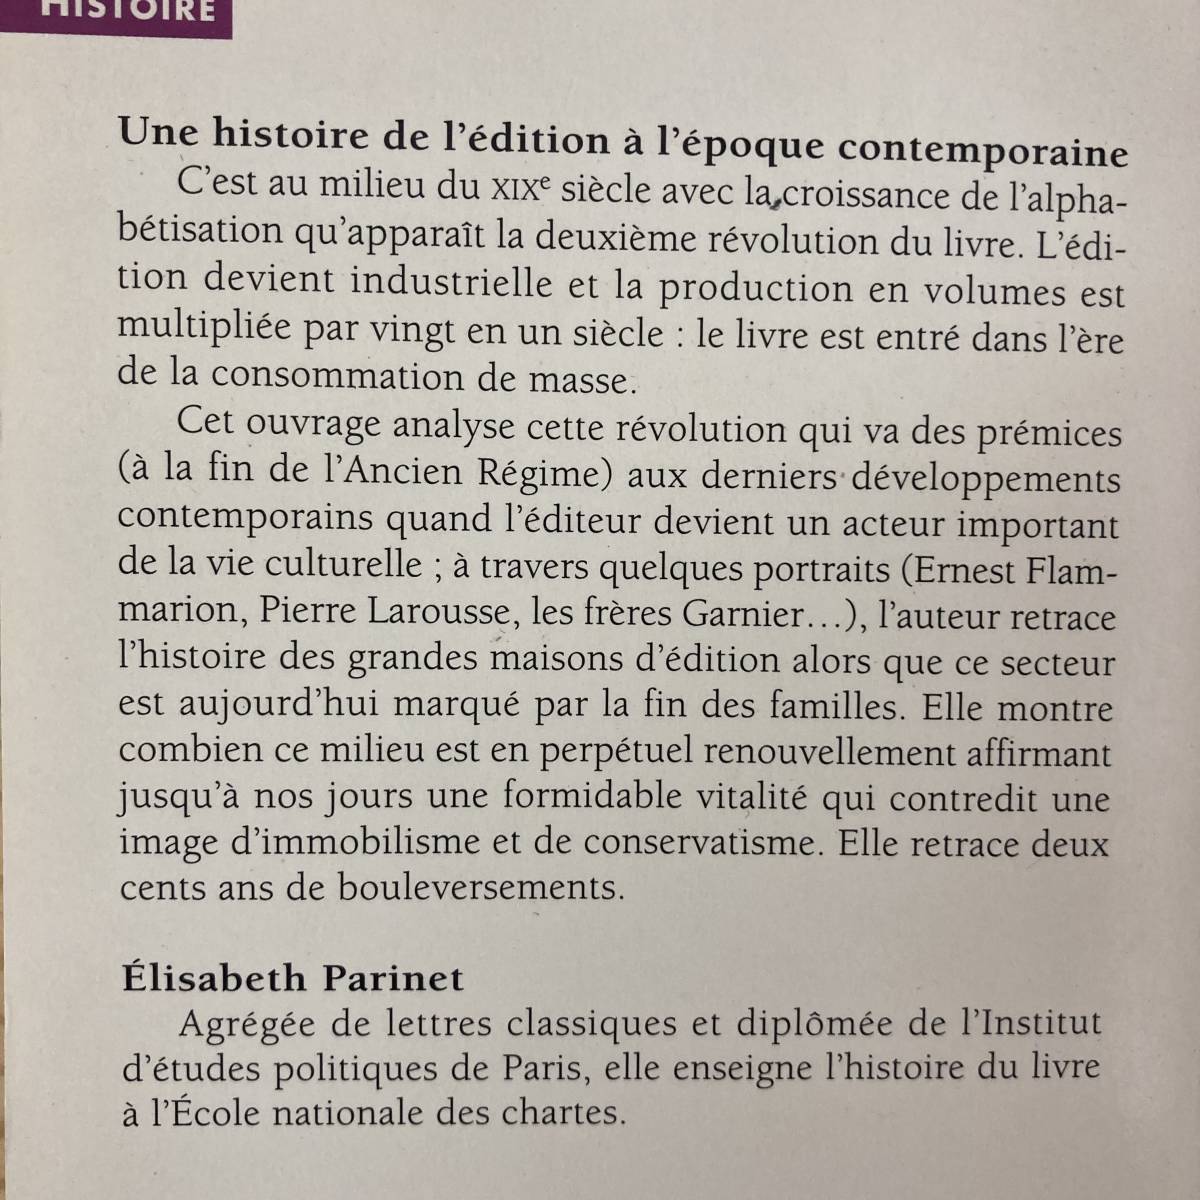 【仏語洋書】Une histoire de l’edition a l’epoque contemporaine / Elisabeth Parinet（著）【出版メディア史】_画像2